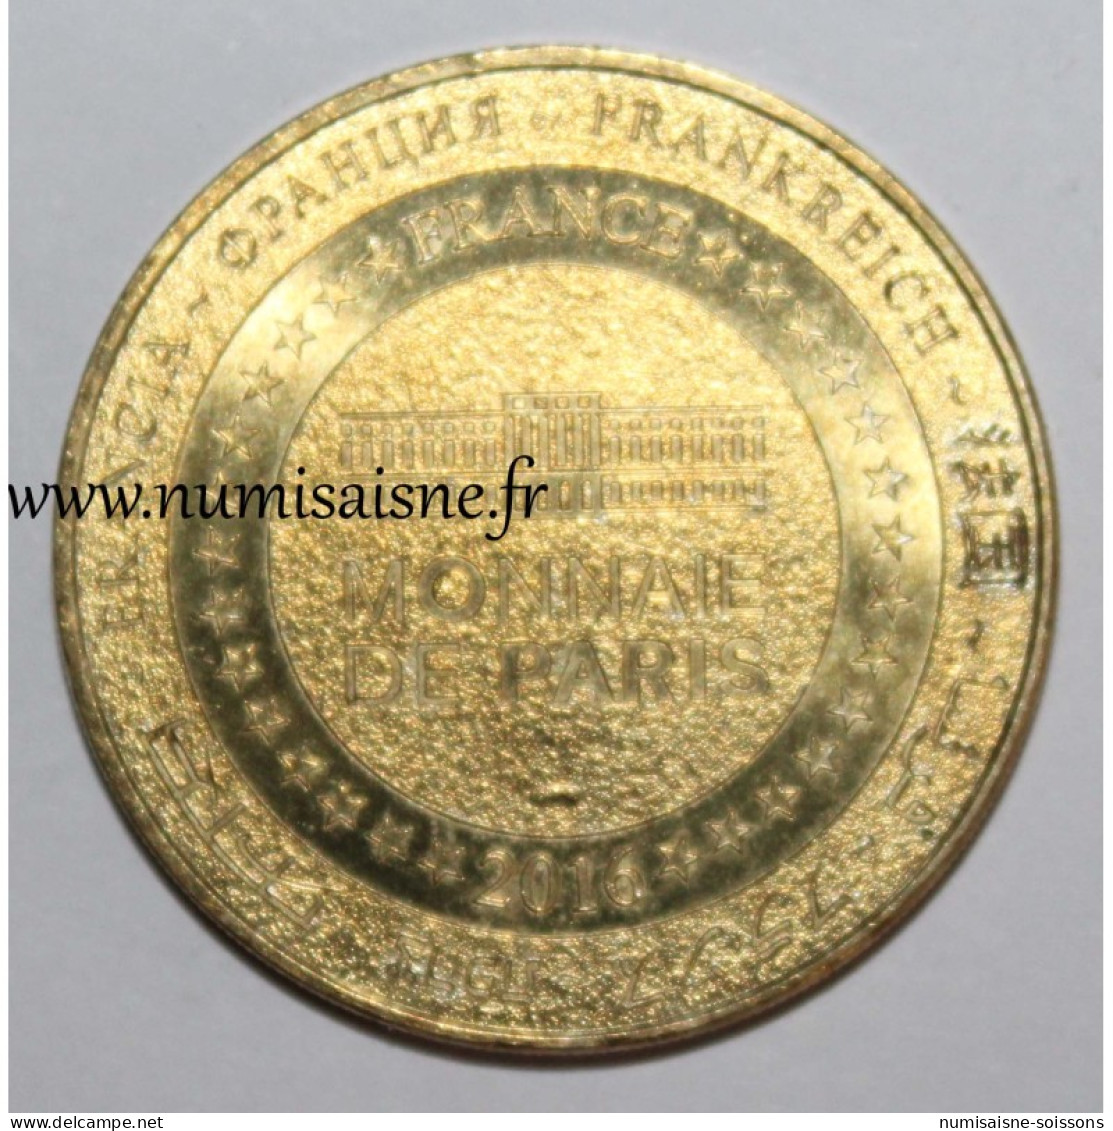 85 - SAINT-GILLES CROIX DE VIE - Monnaie De Paris - 2016 - 2016